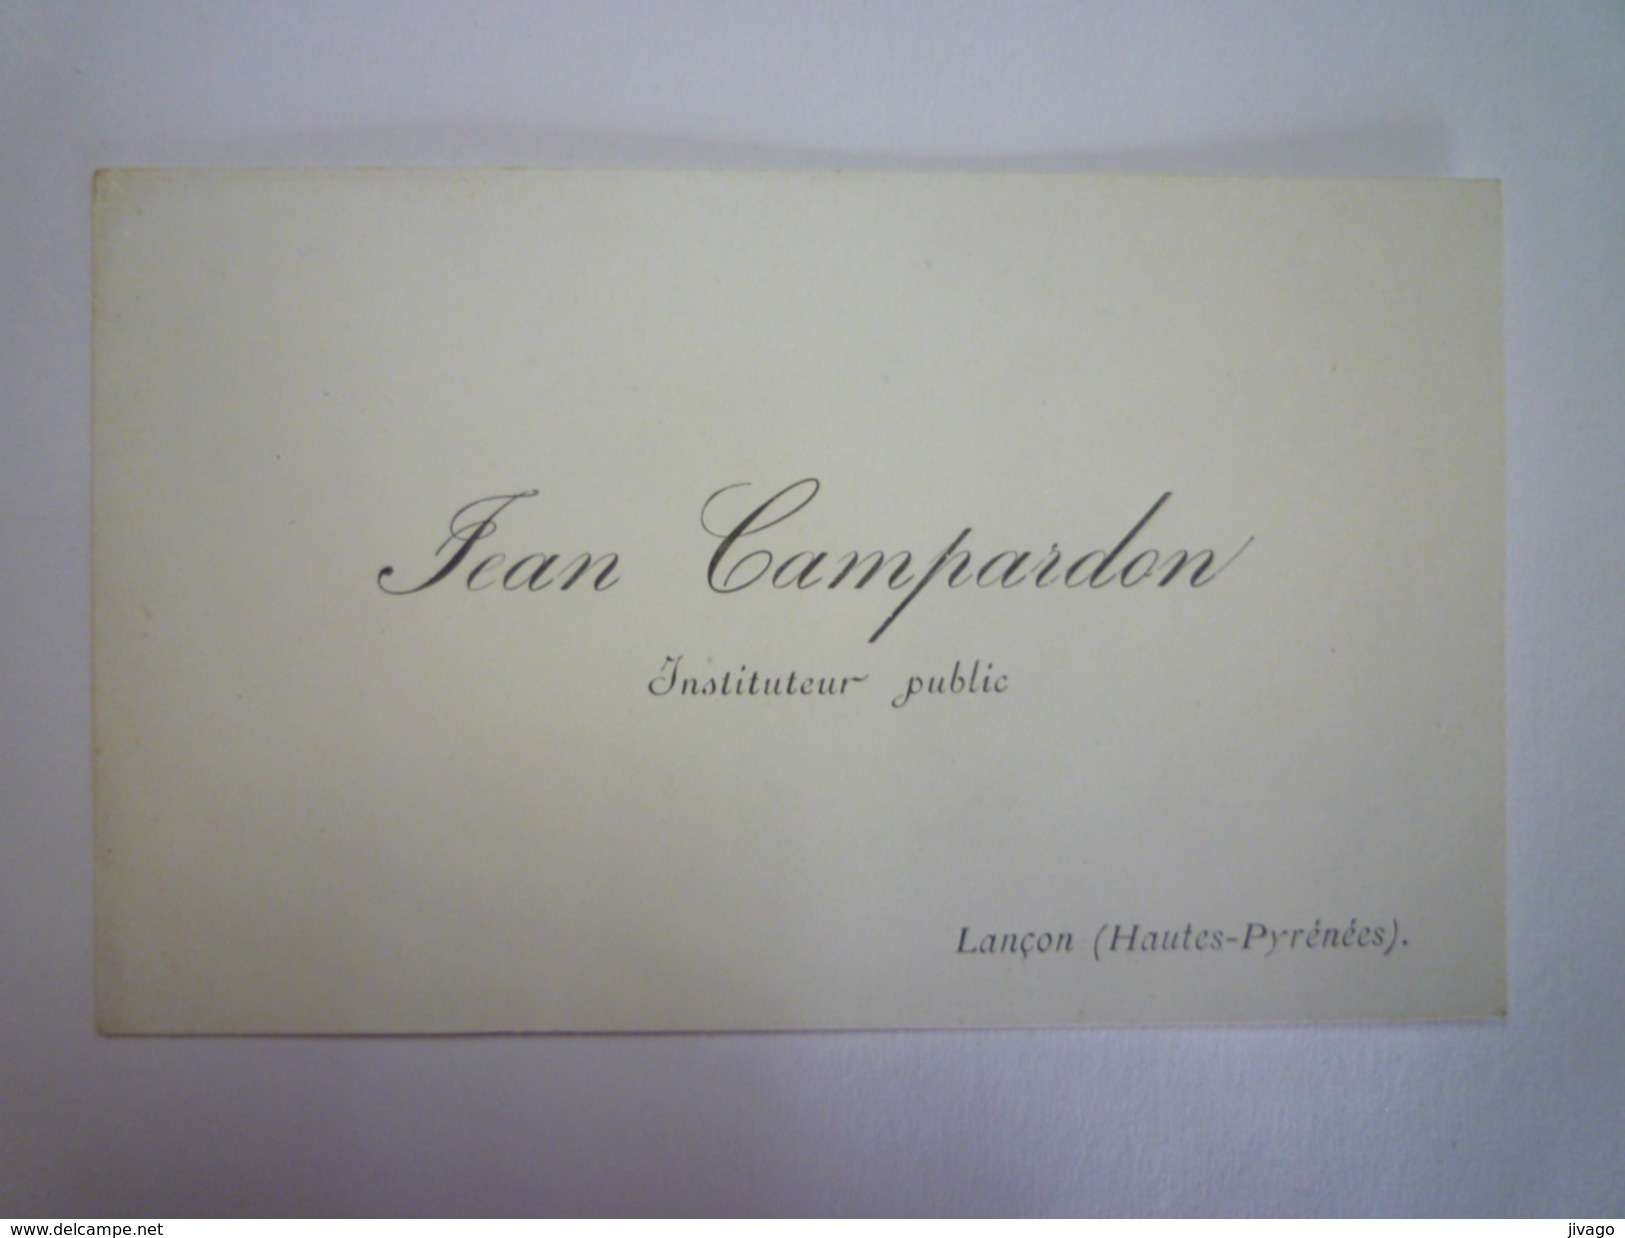 CARTE De VISITE  De  Jean  CAMPARDON  Instituteur Public  à  LANCON  (Hautes-Pyrénées)   - Cartes De Visite